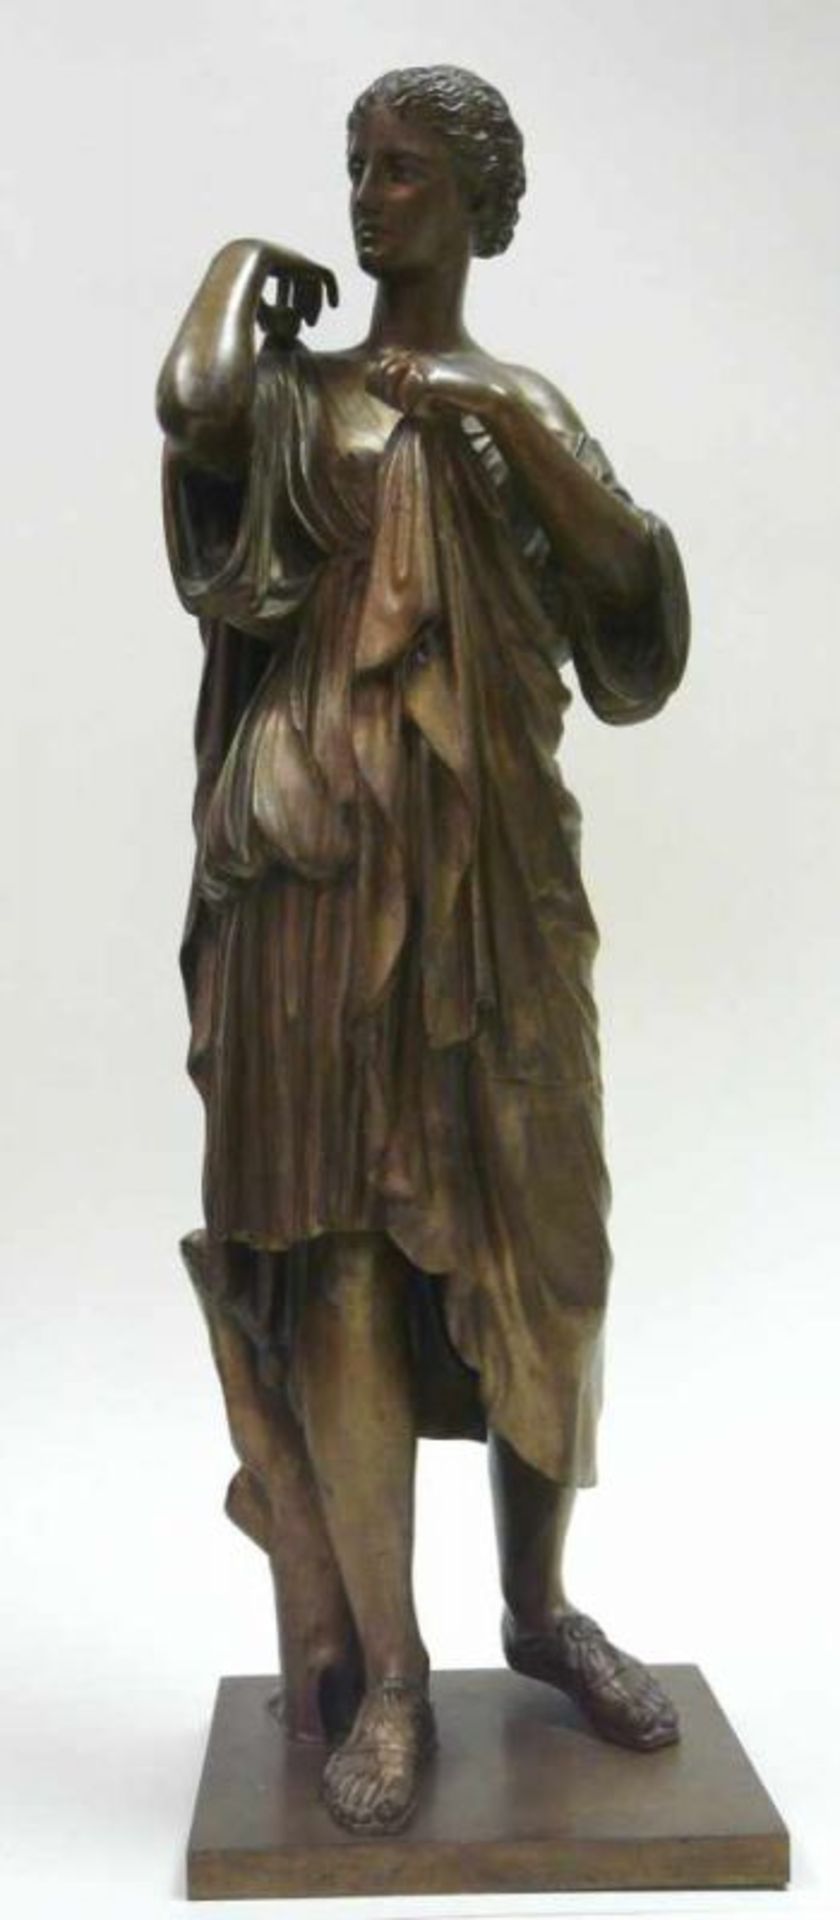 Diana (Artemis) GabiiBronze - Statue der Artemis bzw. Diana, Göttin der Jagd, des Waldes und des